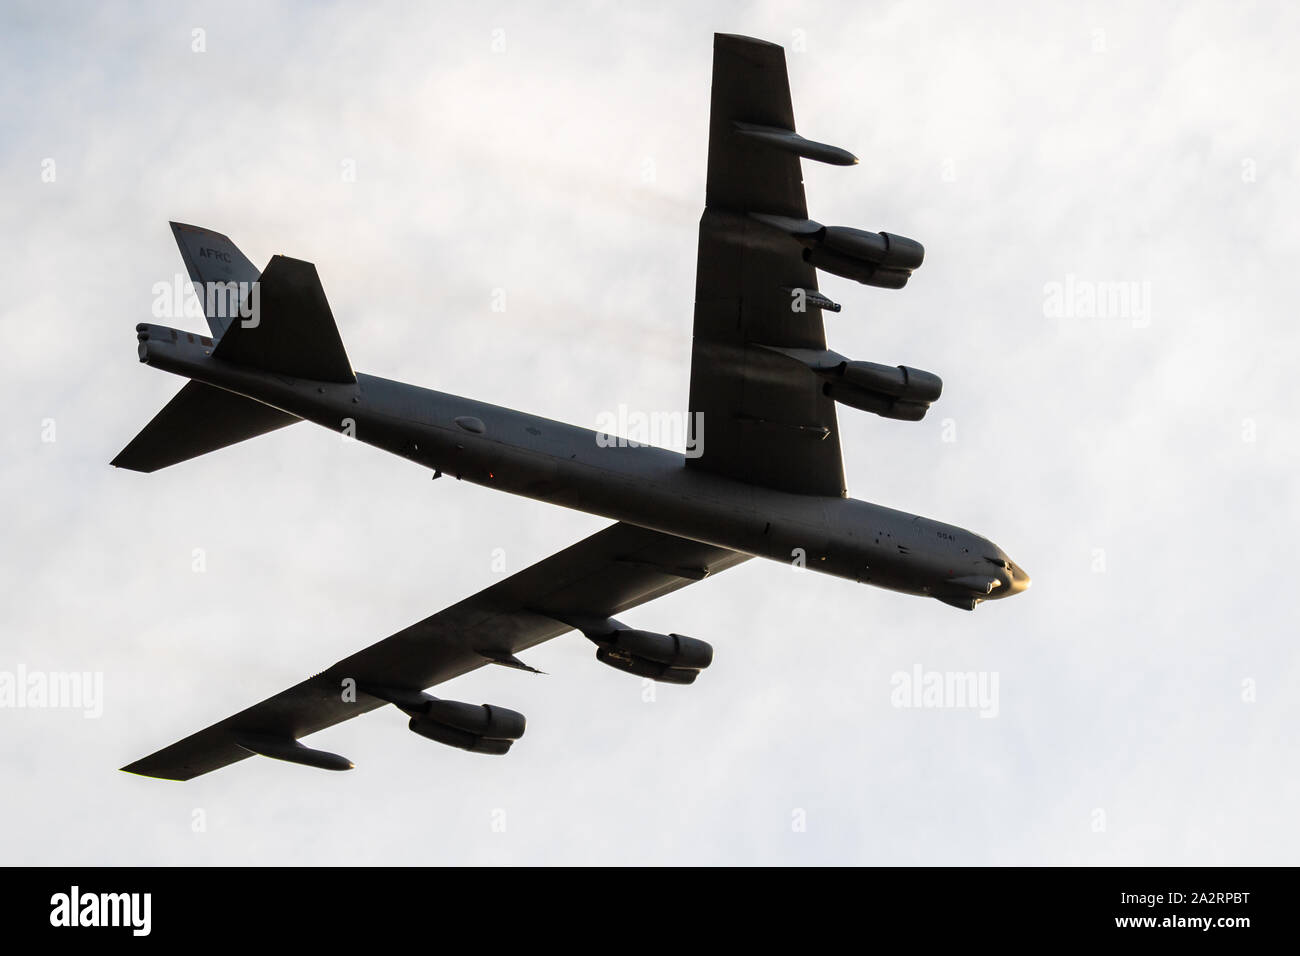 SANICOLE, BELGIQUE - Sep 13, 2019 : US Air Force Boeing B-52 Stratofortress bomer avion effectuant un pass au coucher du soleil Sanice meeting aérien. Banque D'Images